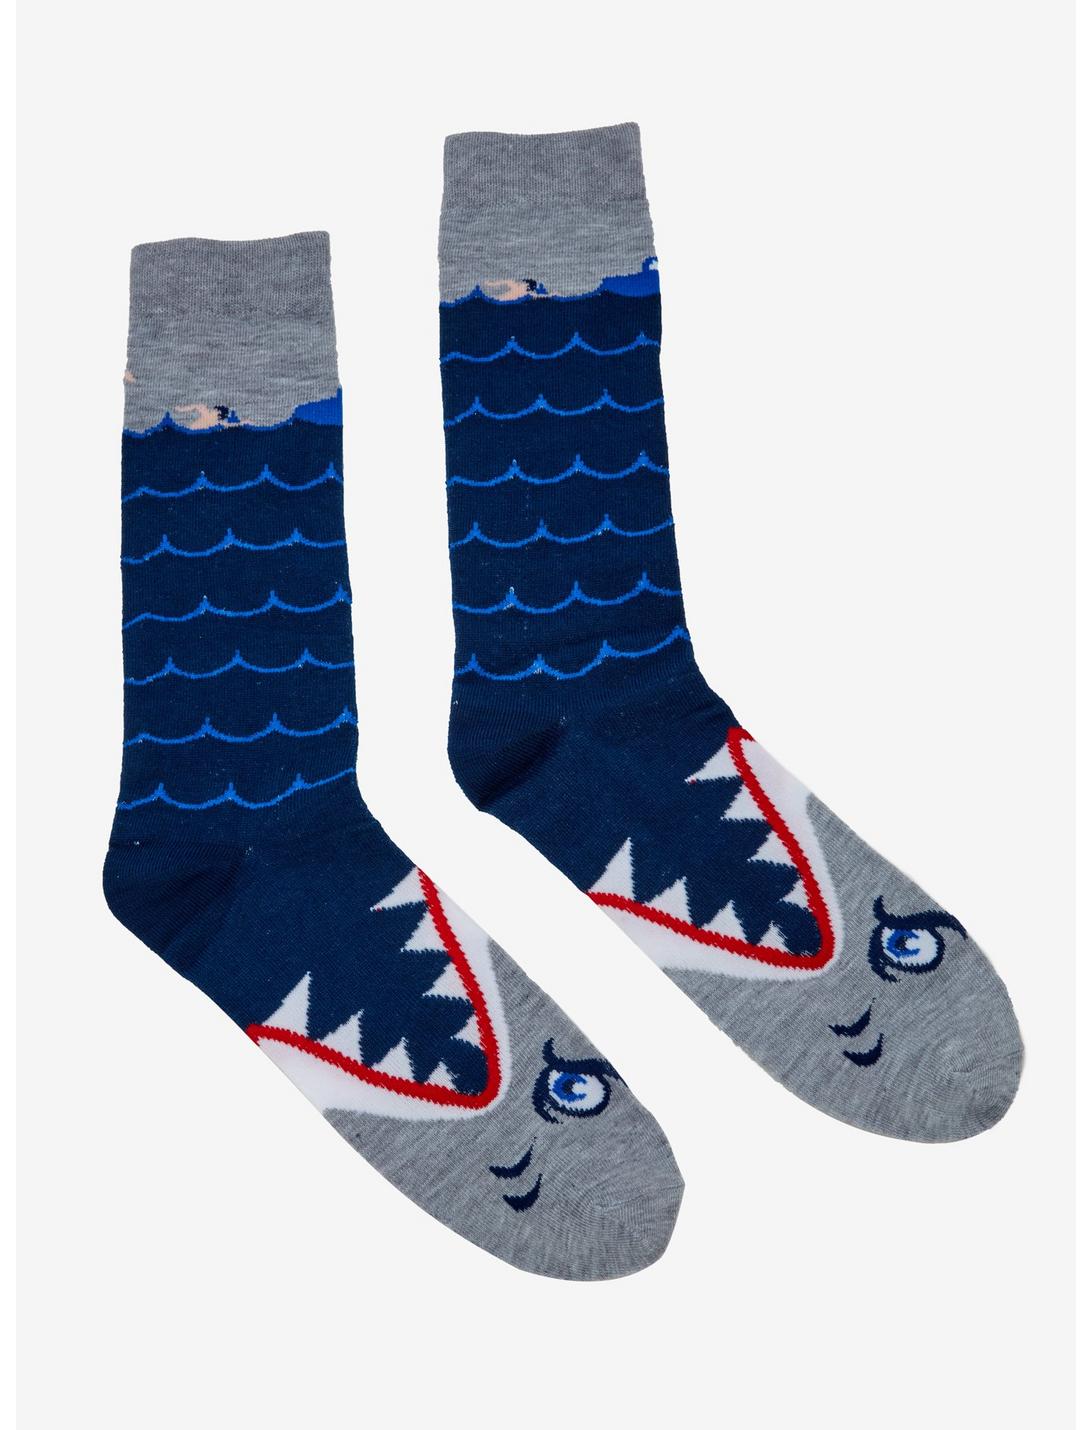 Shark Attack Crew Socks, , hi-res